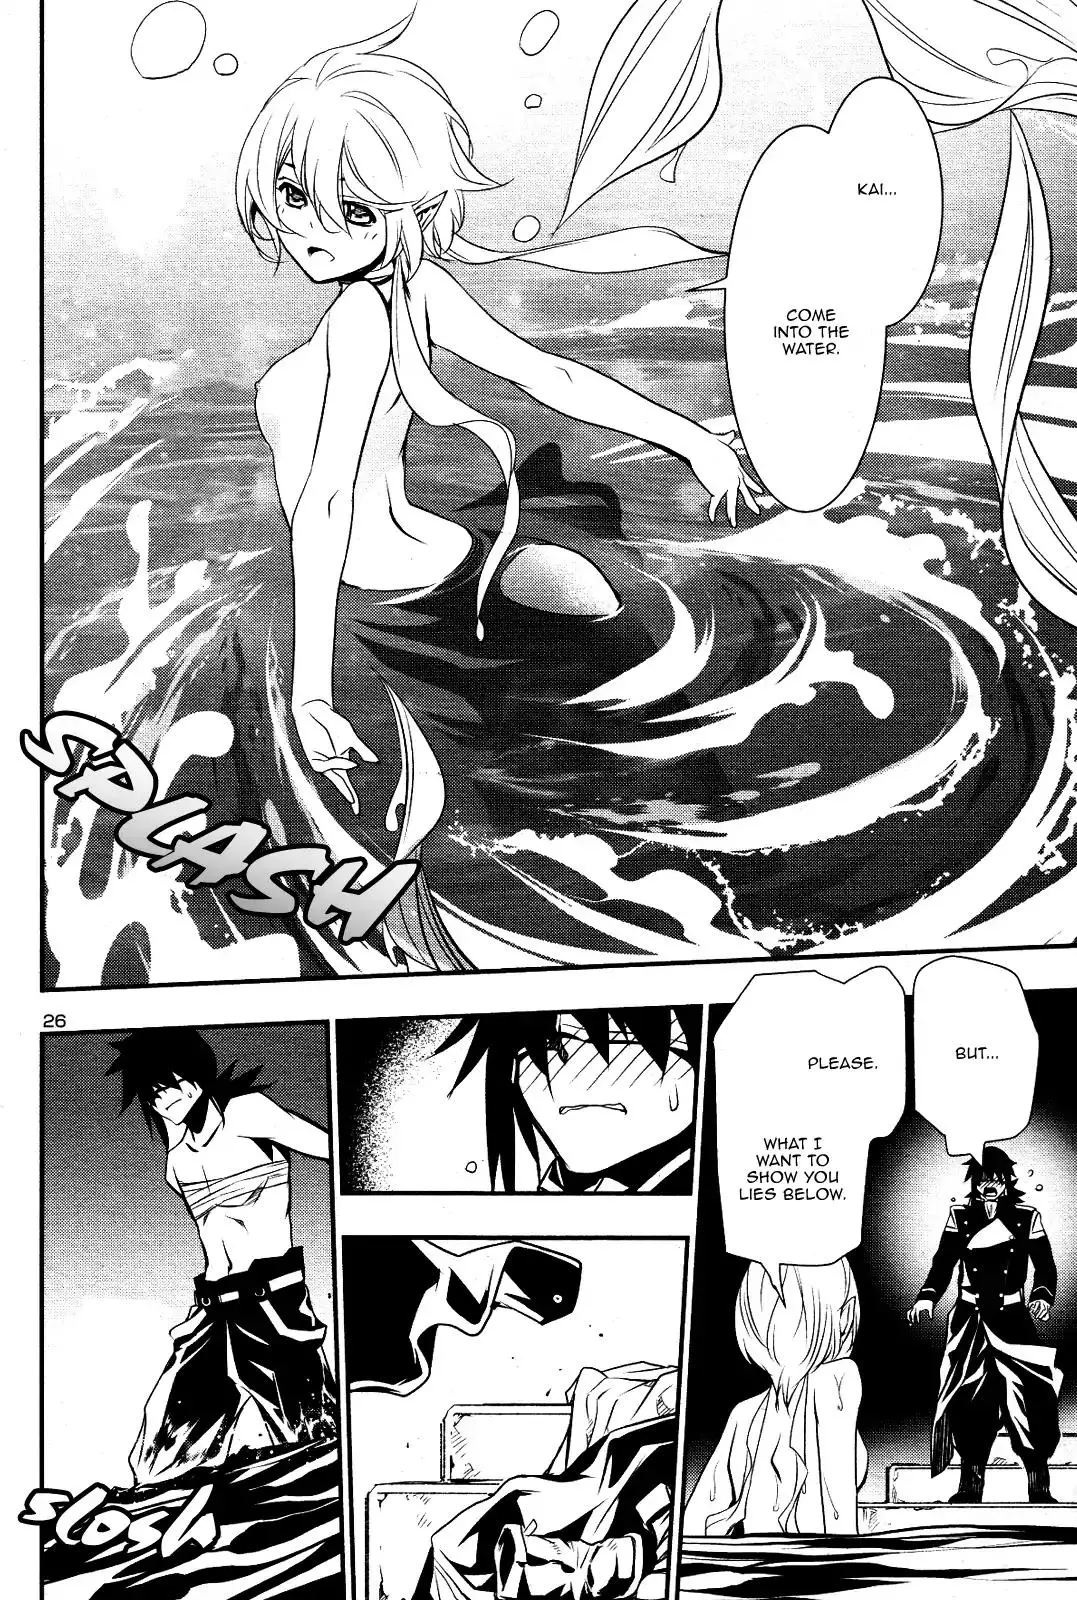 Shinju no Nectar - 21 page 24